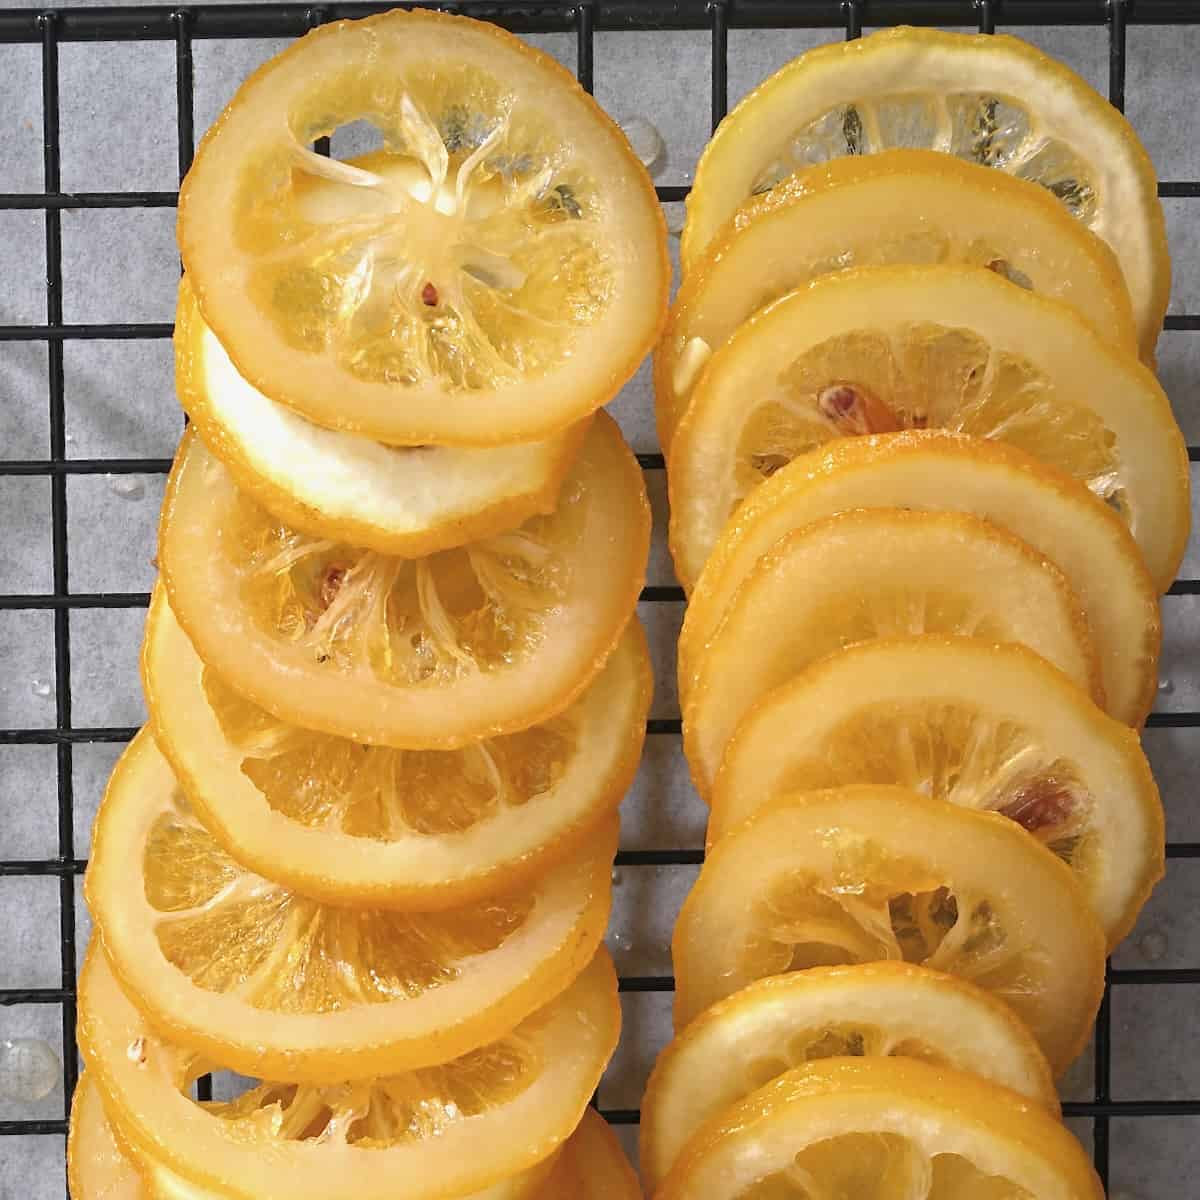 candied citrus